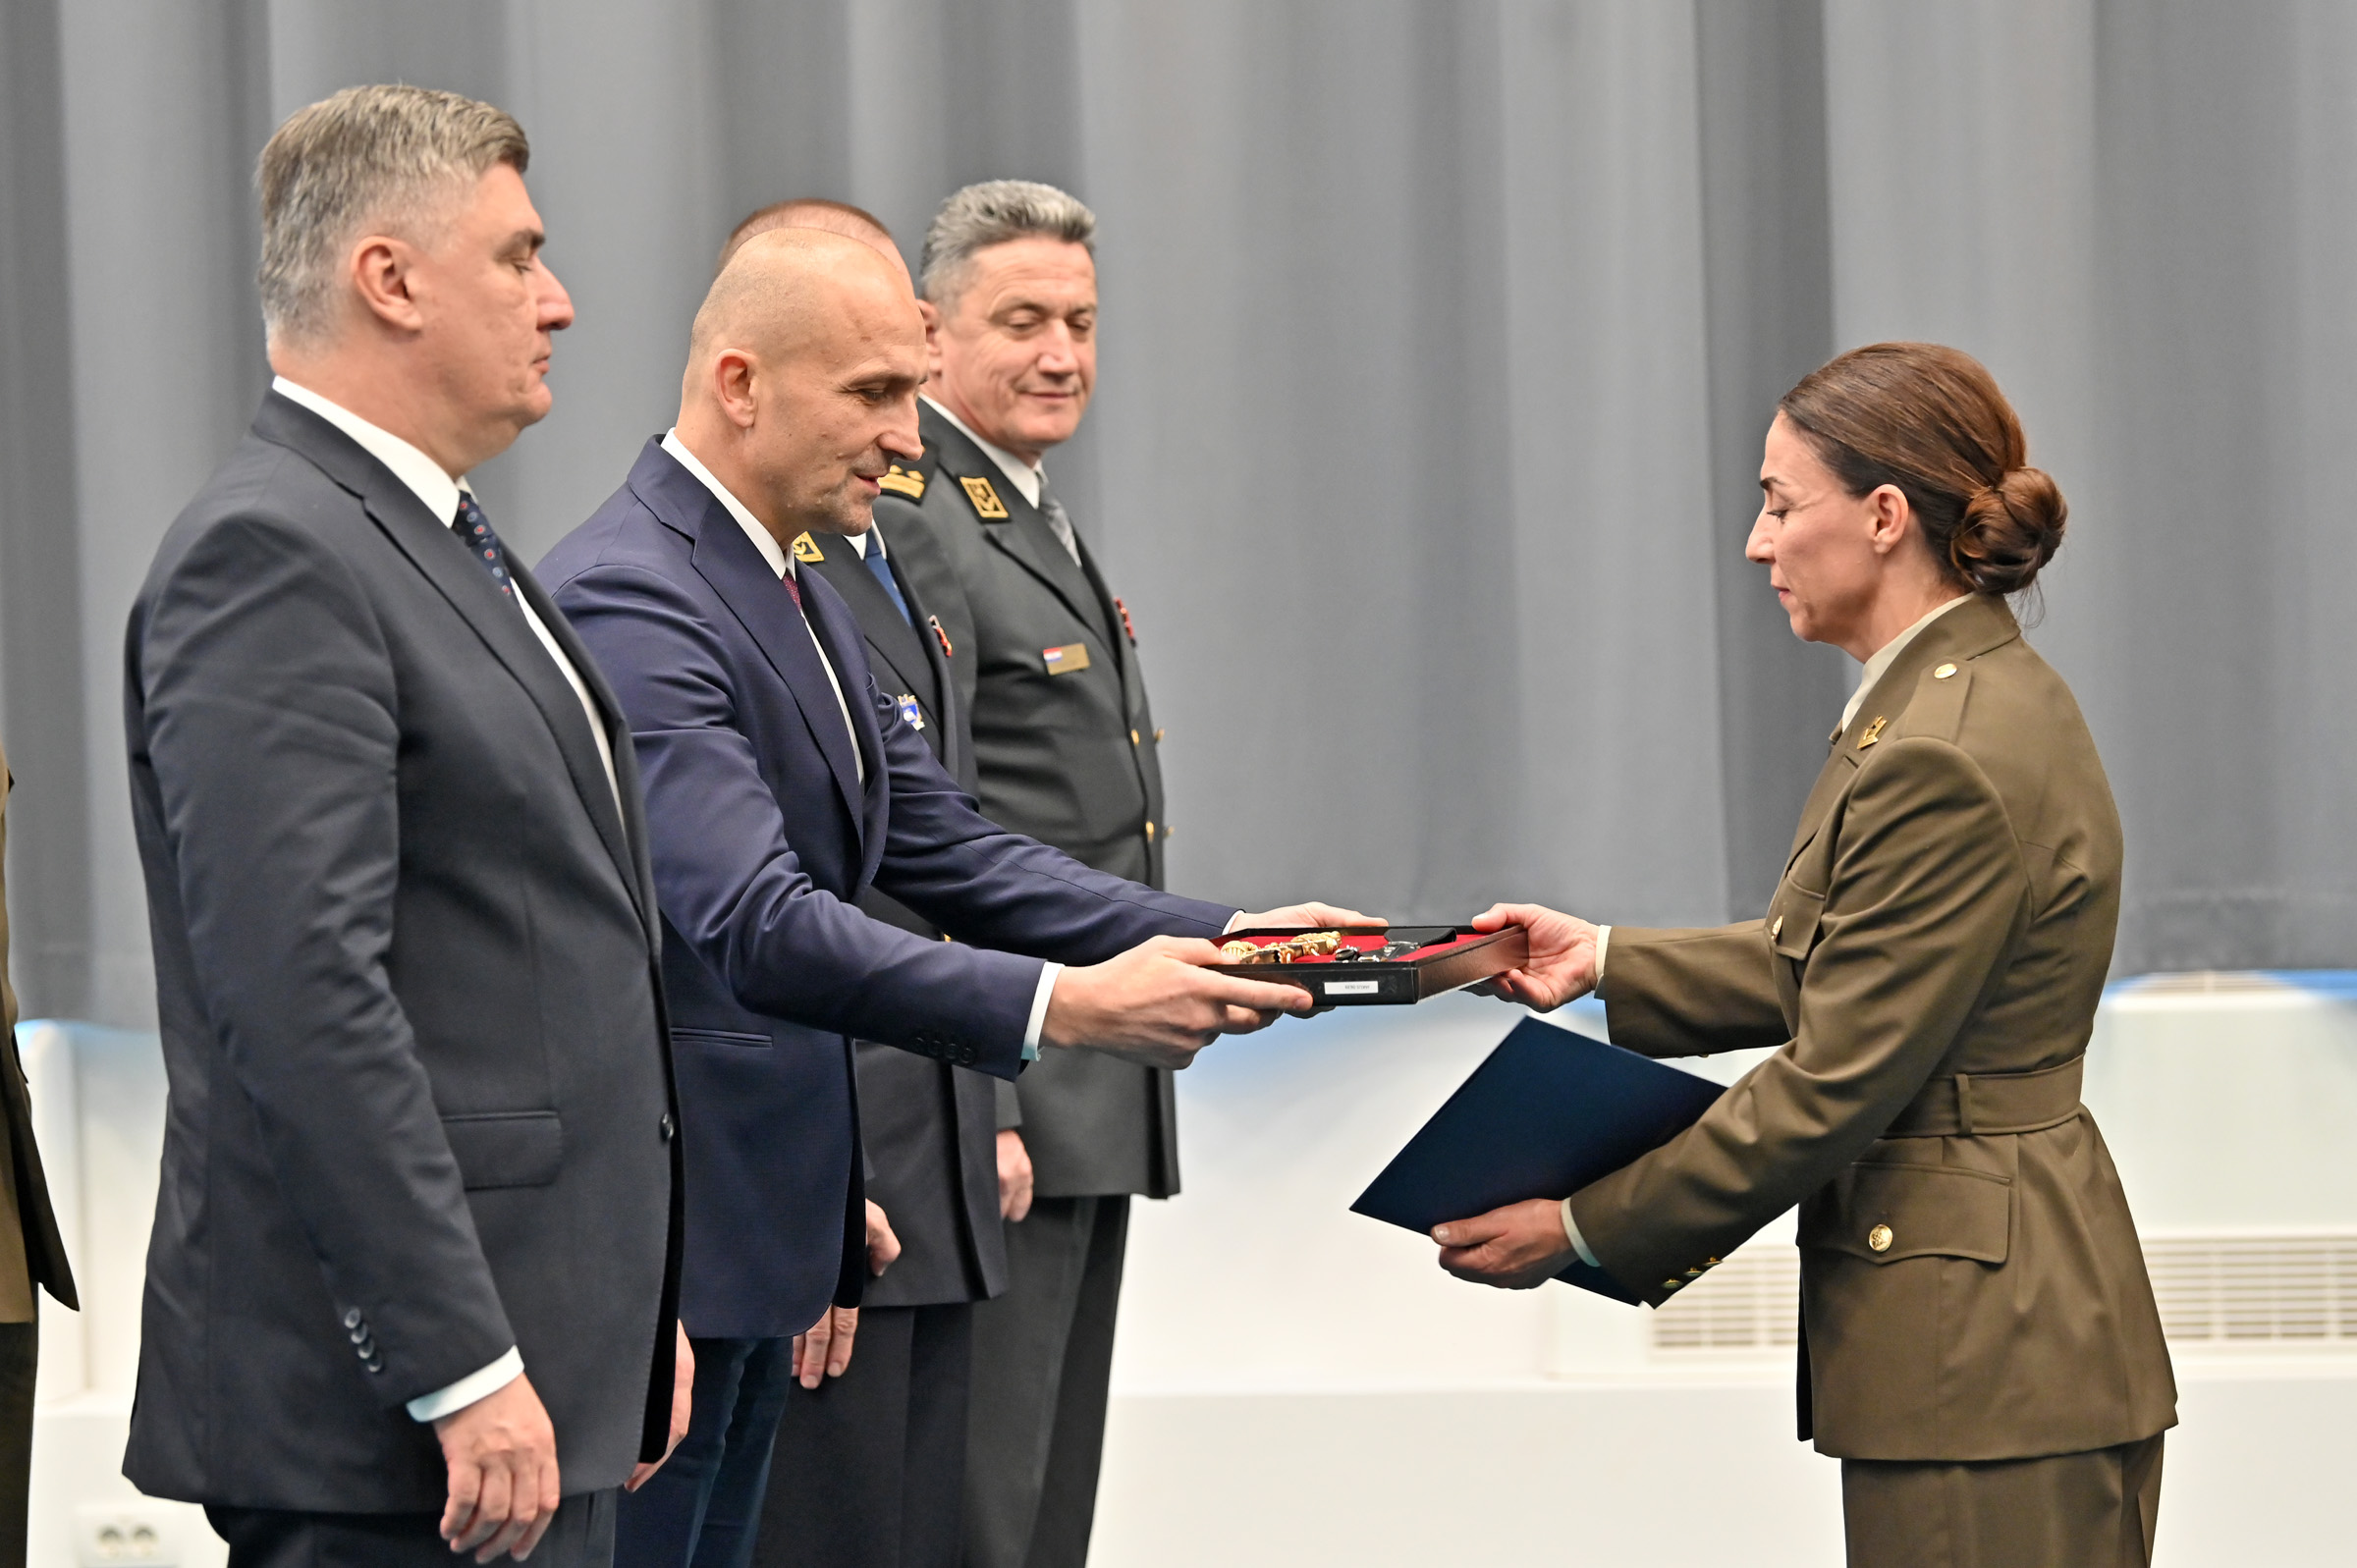 Potpredsjednik Vlade i ministar obrane Anušić na dodjeli prvog časničkog čina budućim časnicima zdravstvene službe